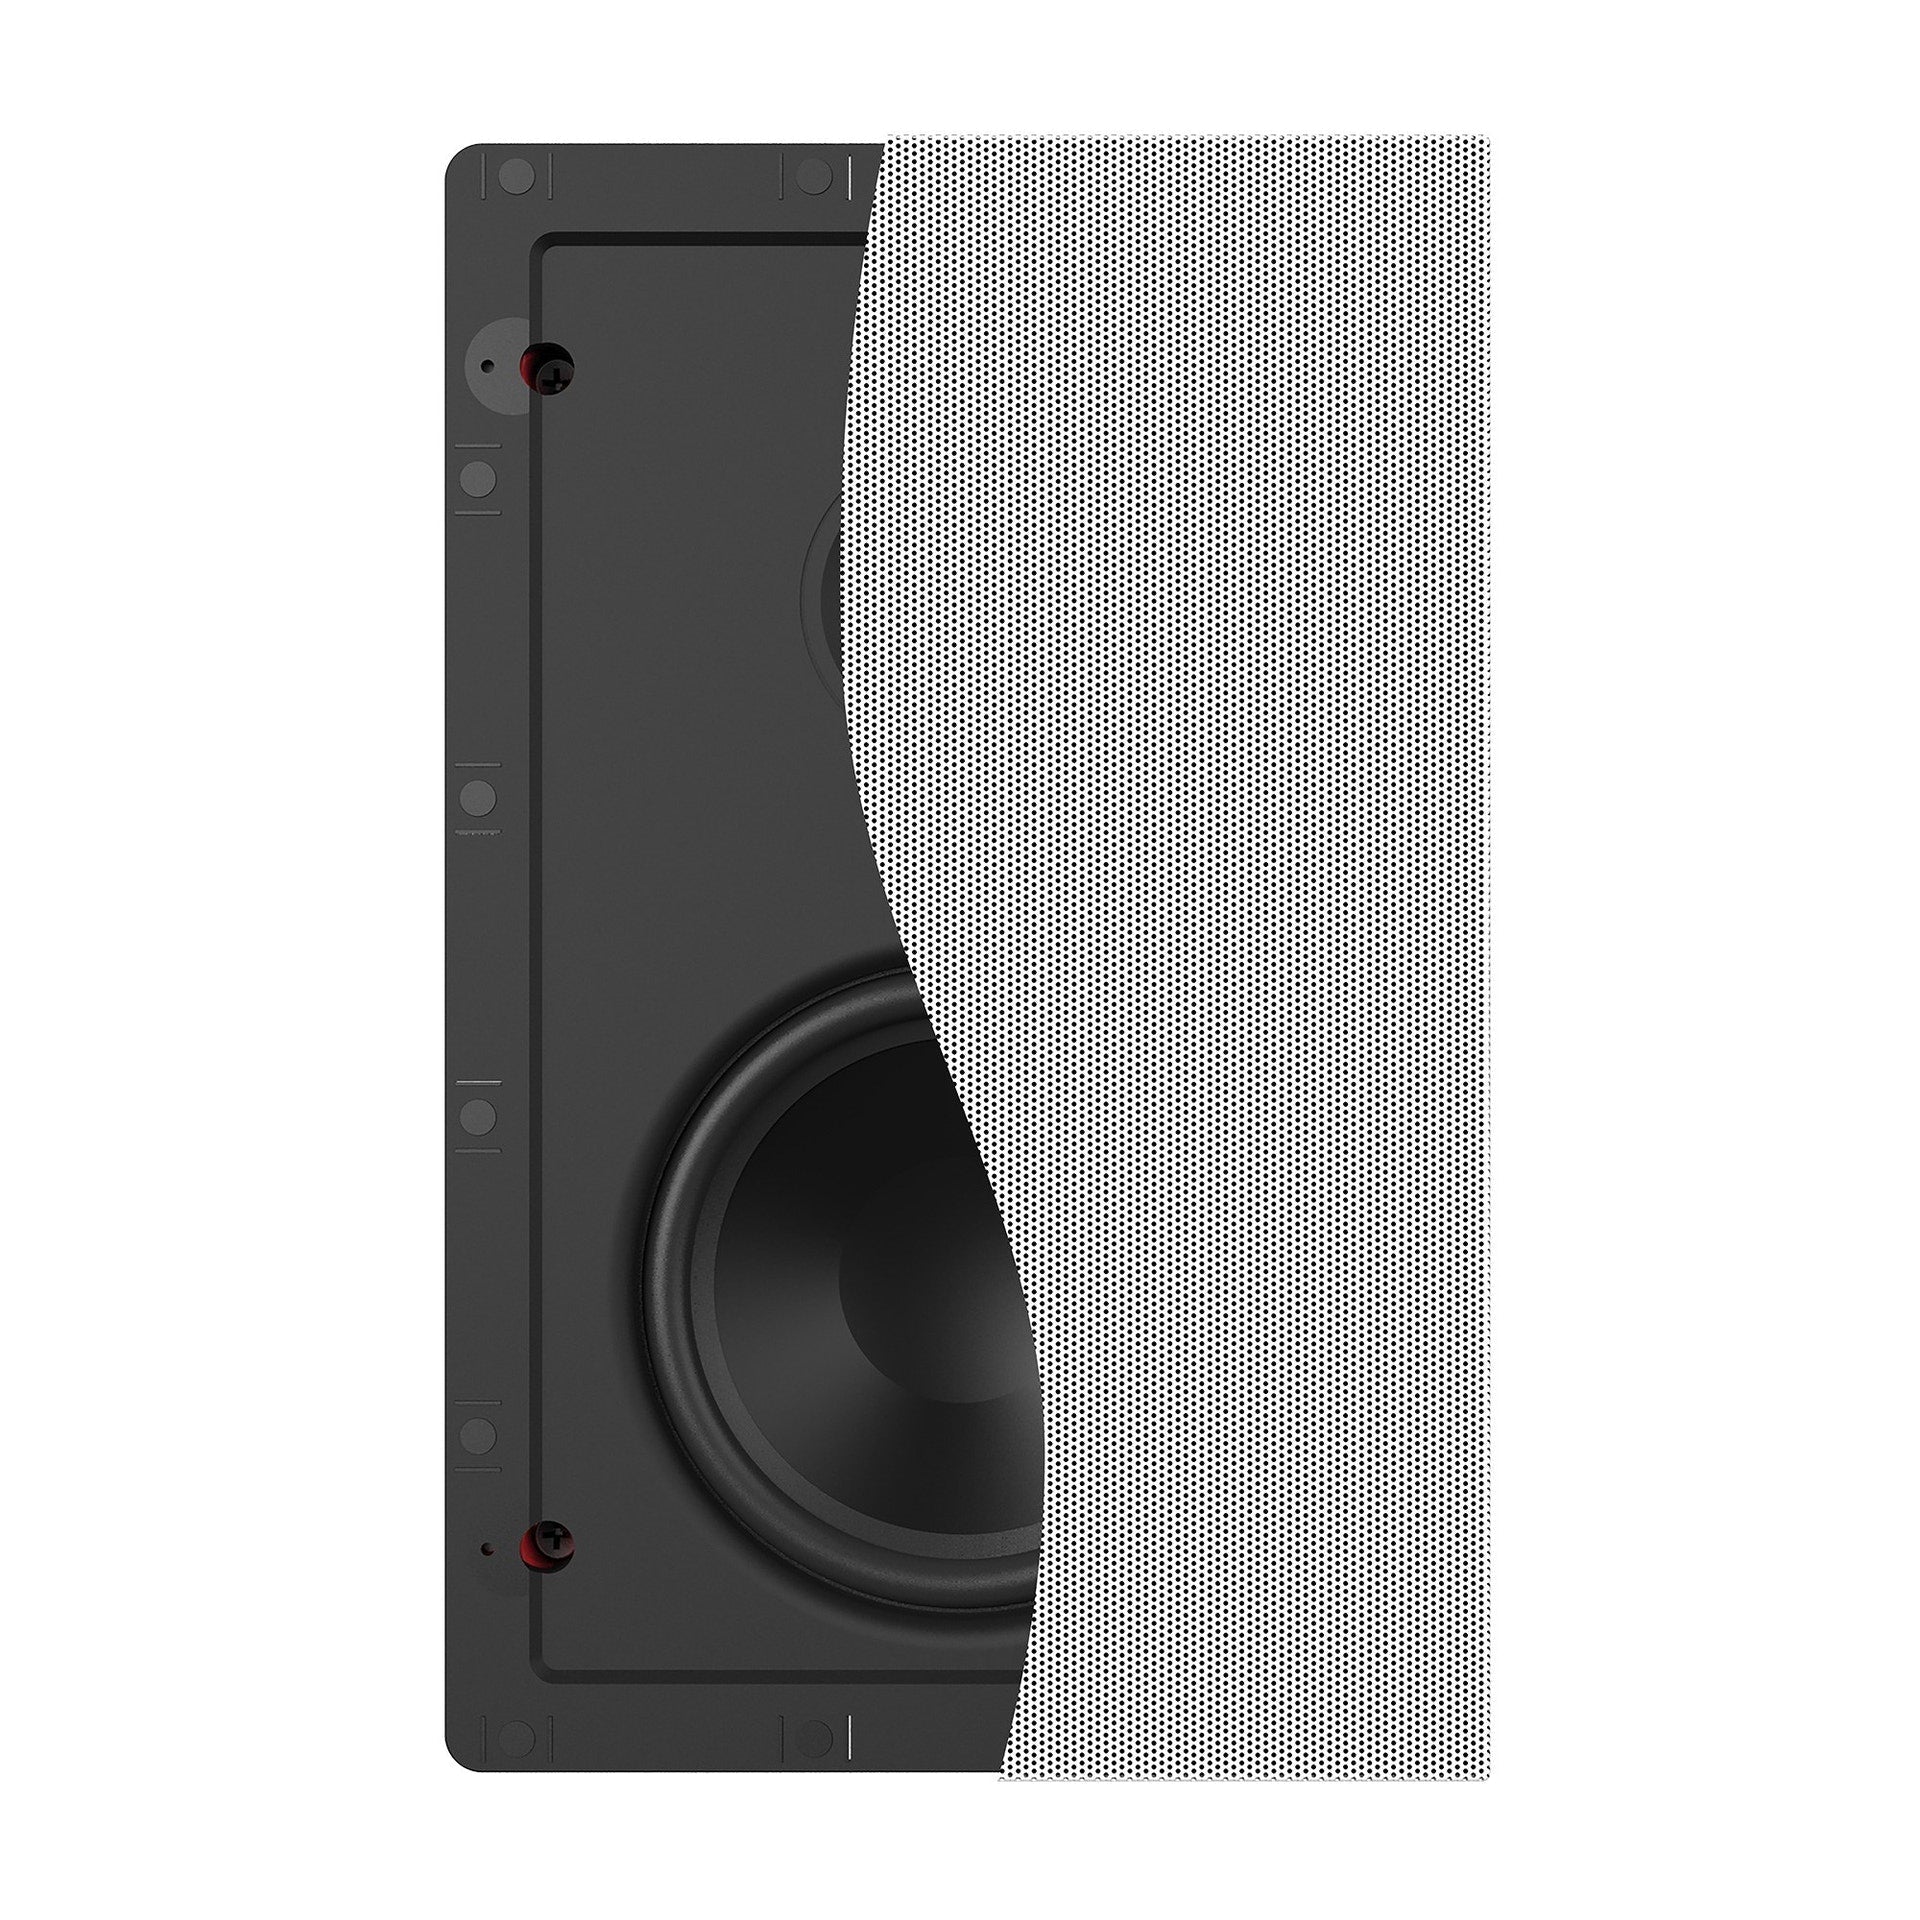 DS-160W 6.5" In-Wall Speaker (Single)